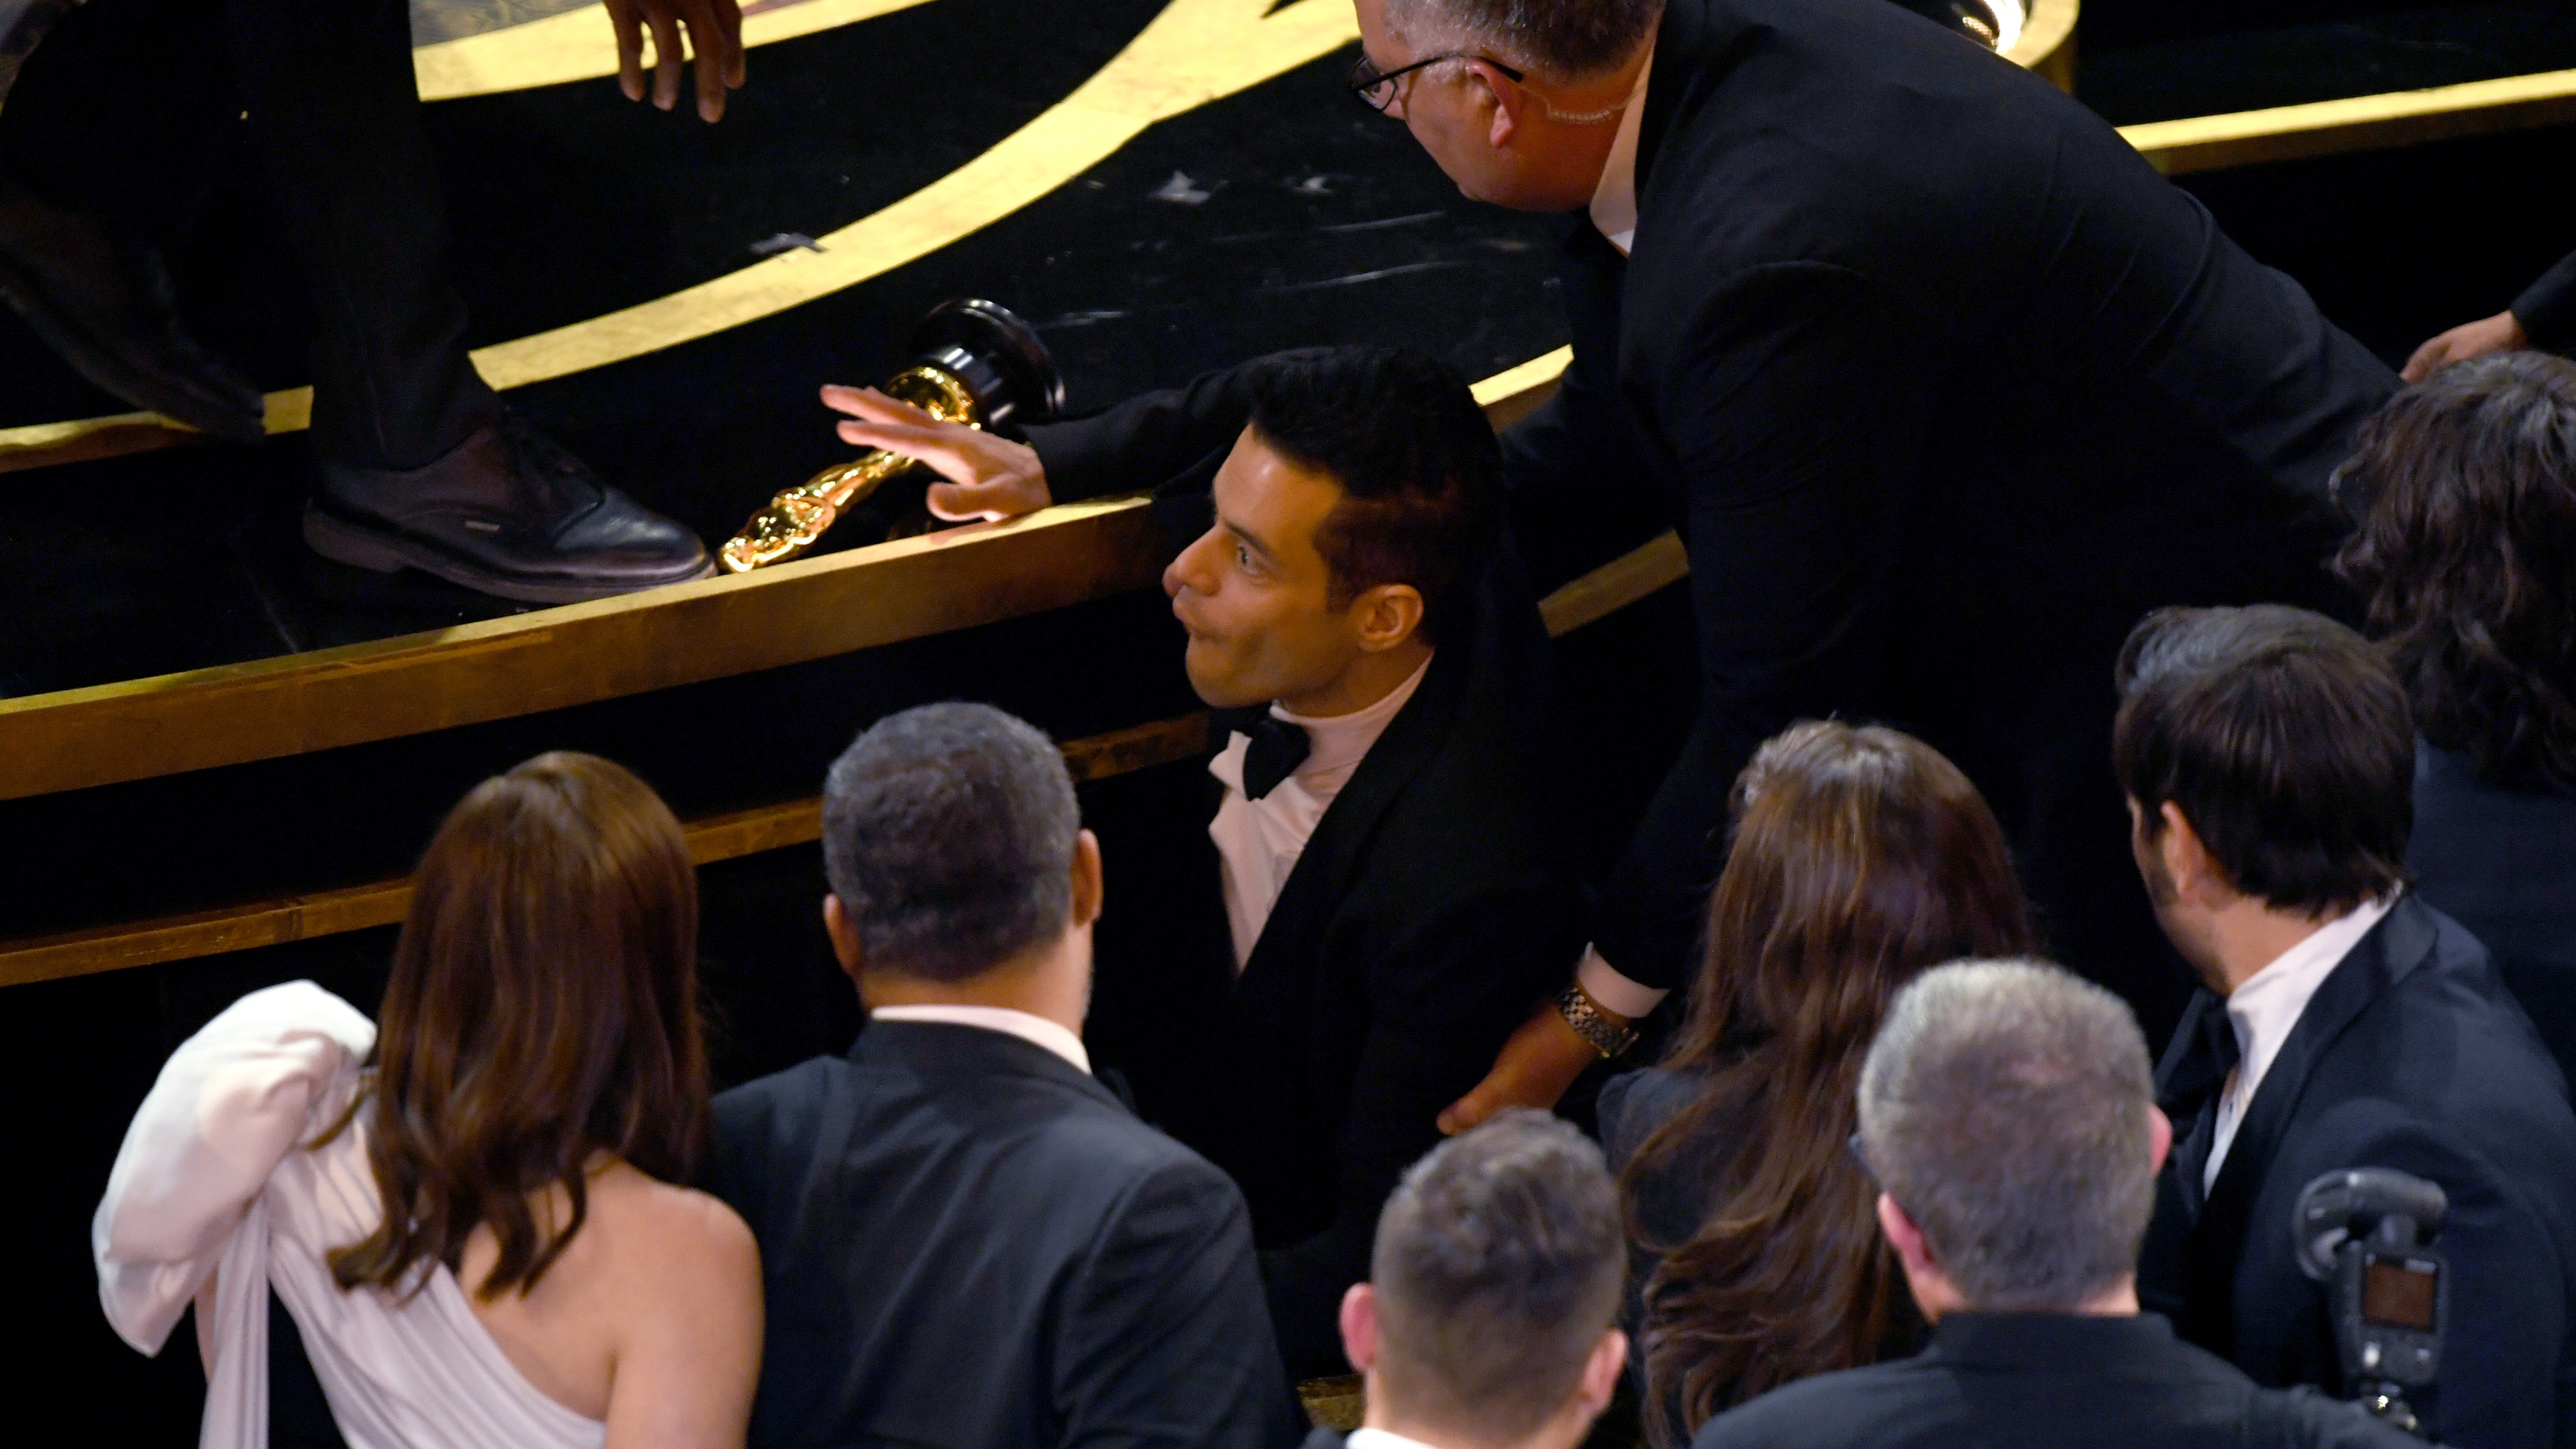 Plötzlich fand sich Rami Malek vor der Oscar-Bühe auf dem Boden wieder